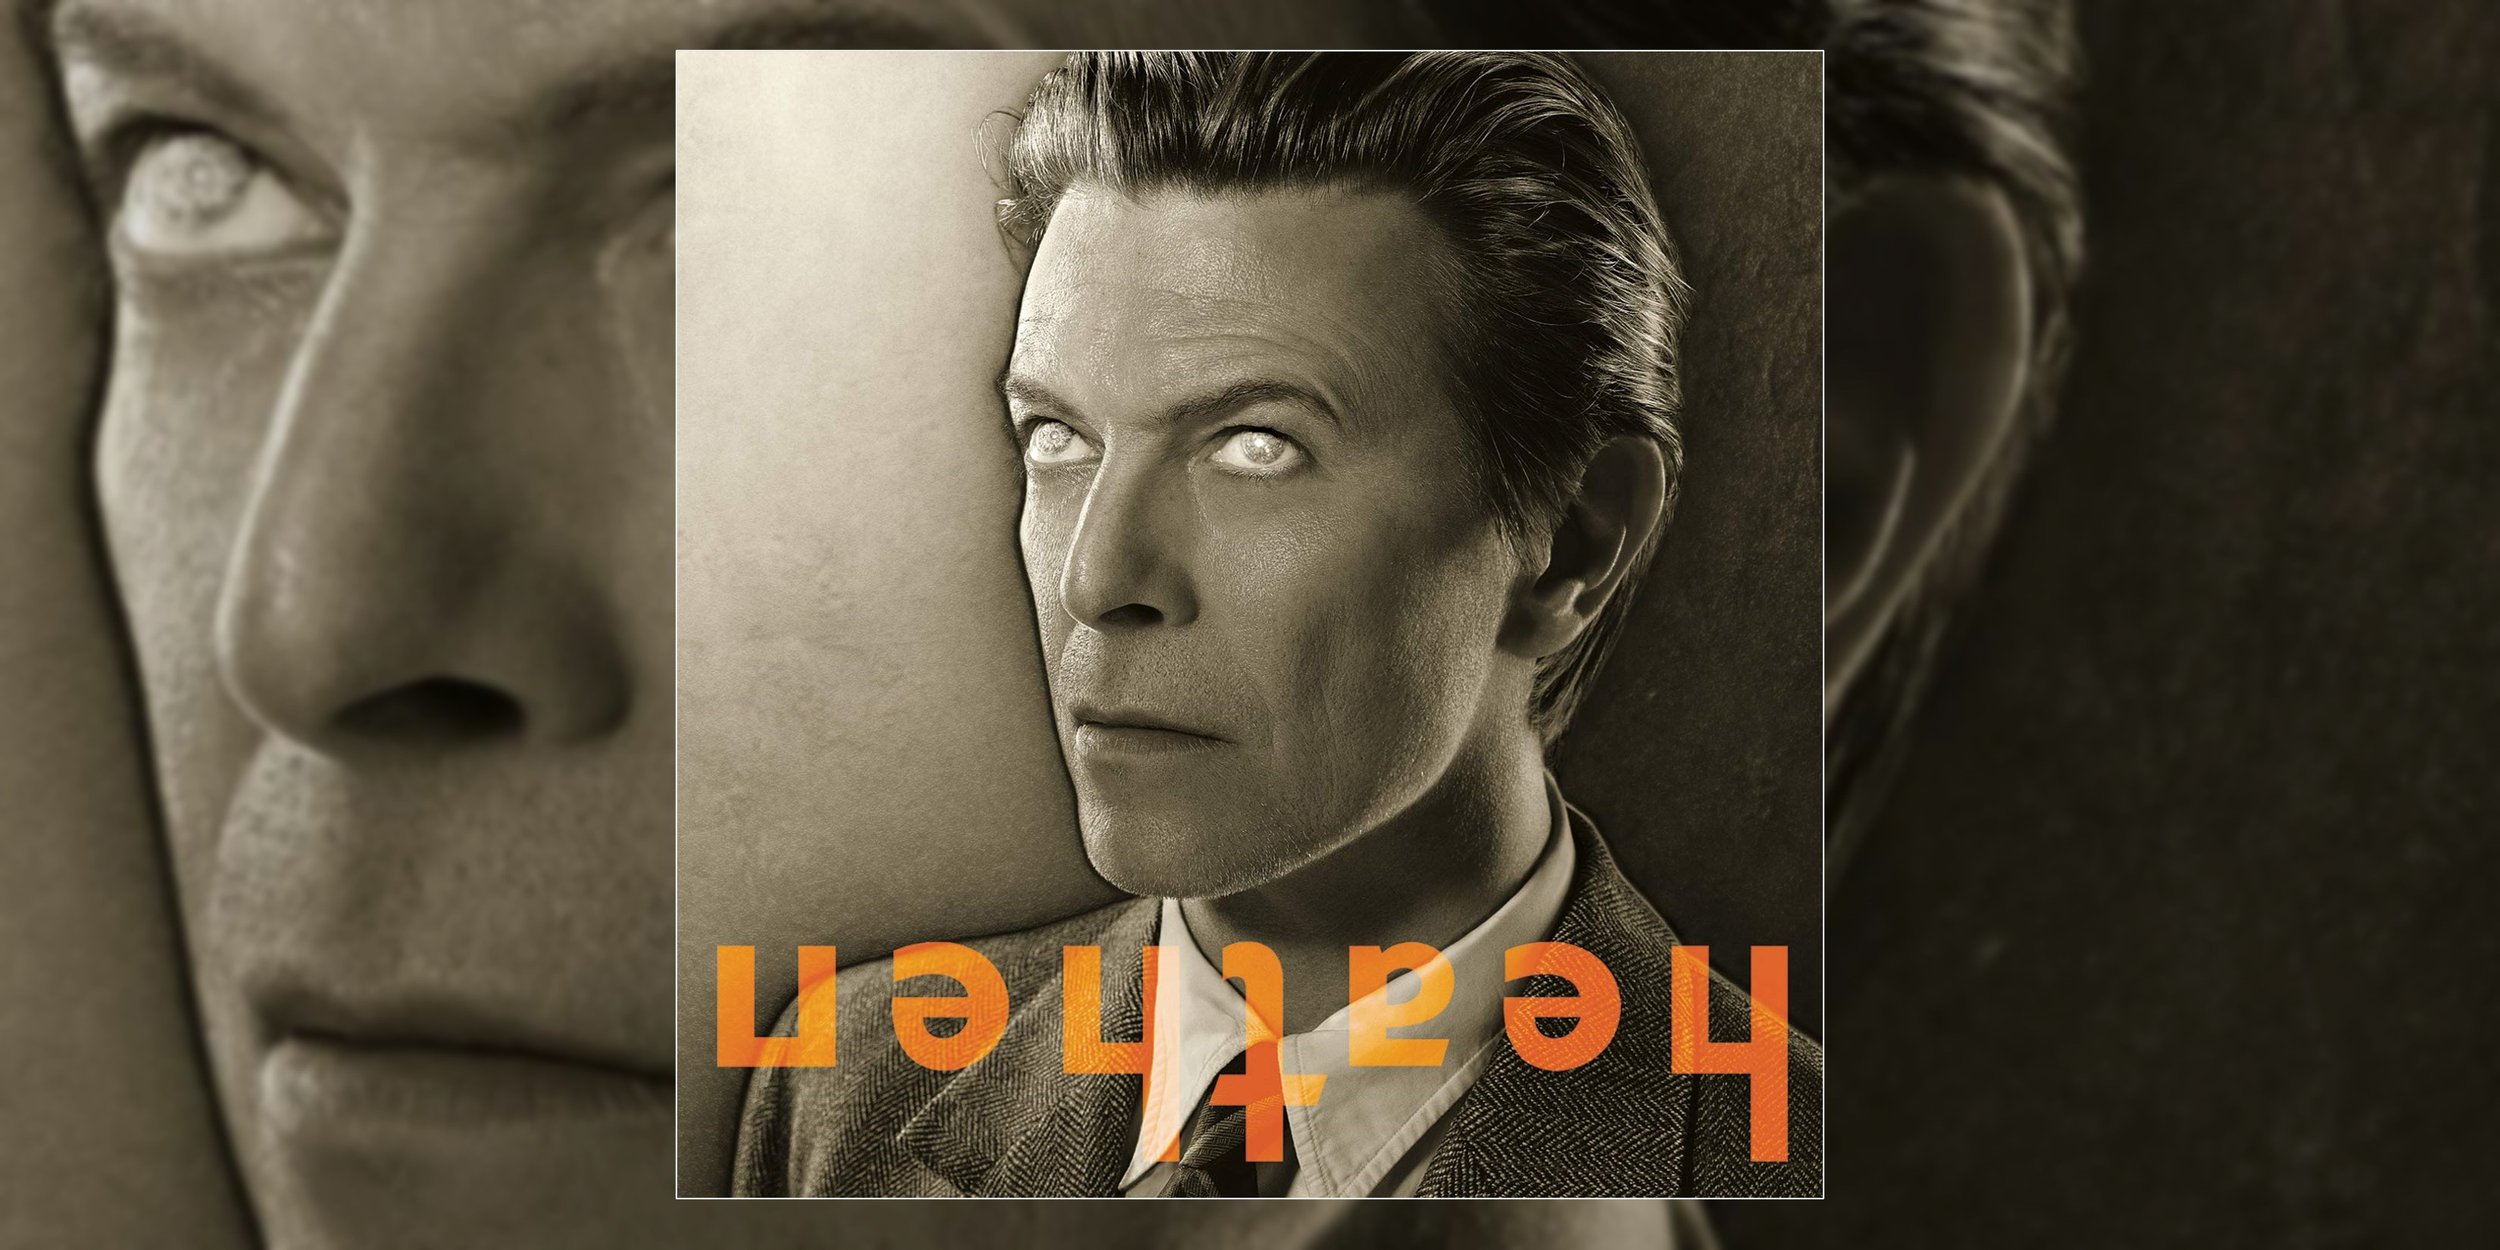 David Bowie's 'Heathen' Turns 20 | Anniversary Retrospective